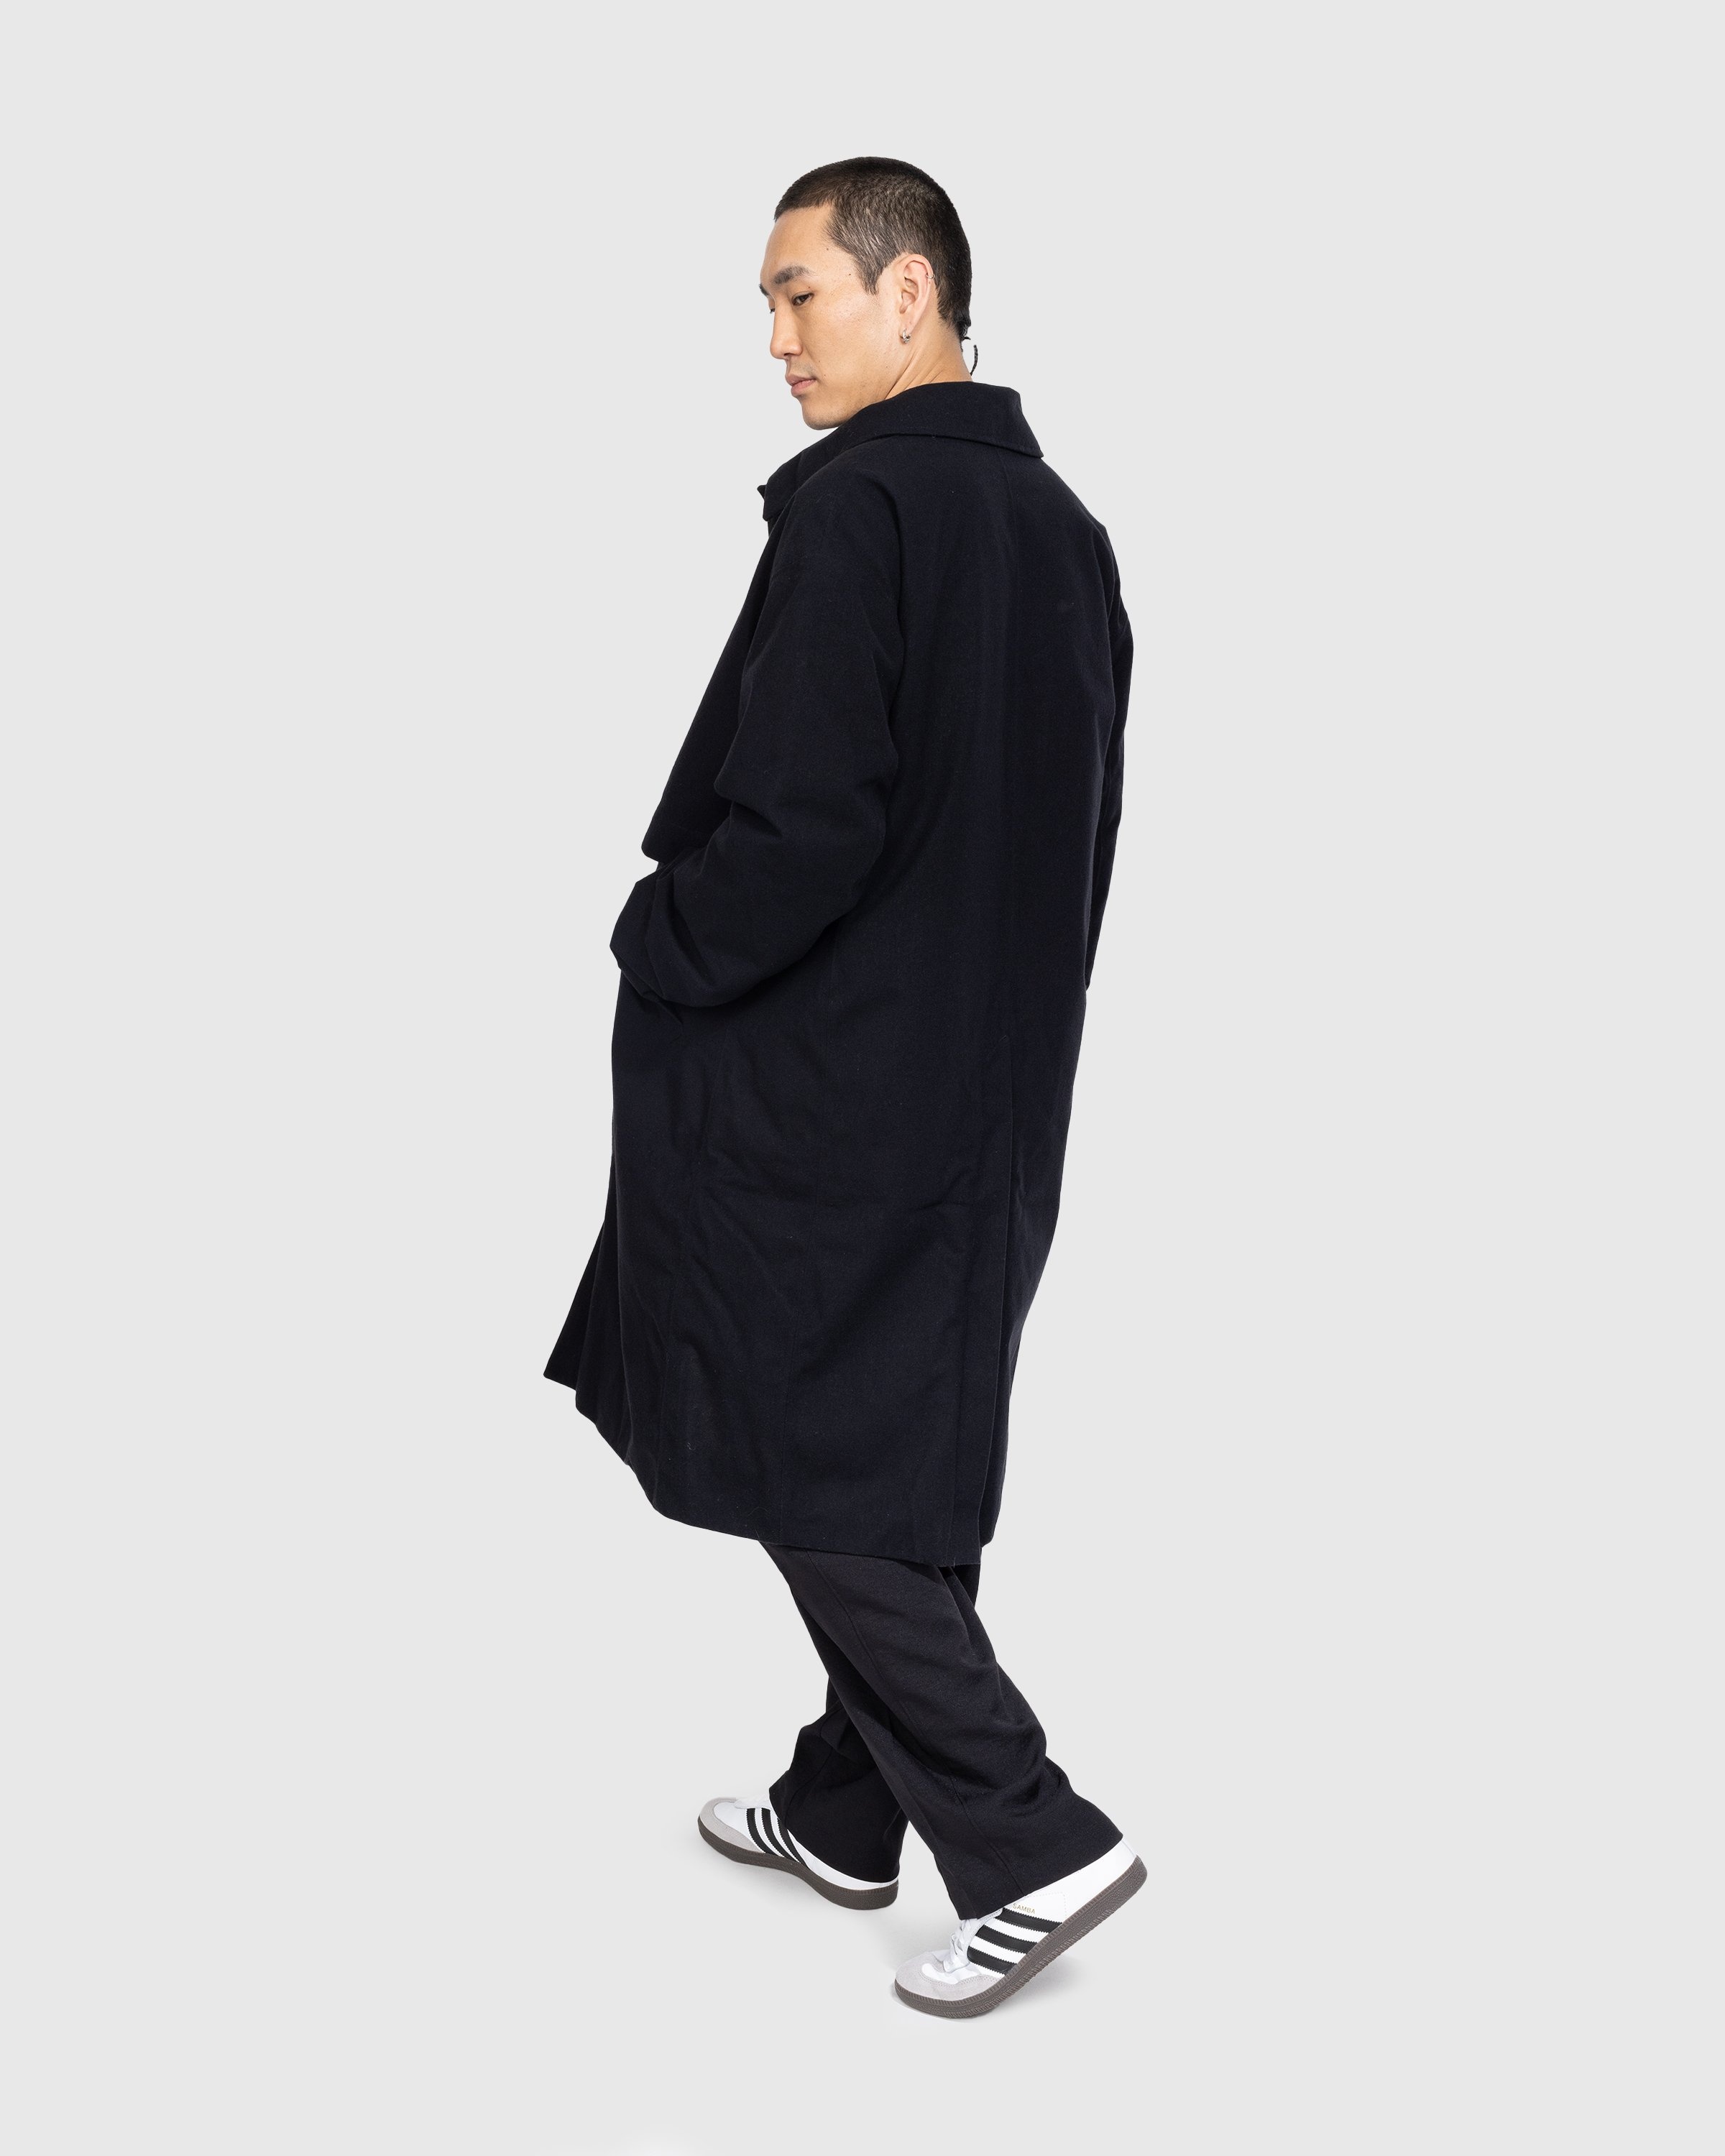 Y-3 – CL RGTX Coat - Outerwear - Black - Image 3